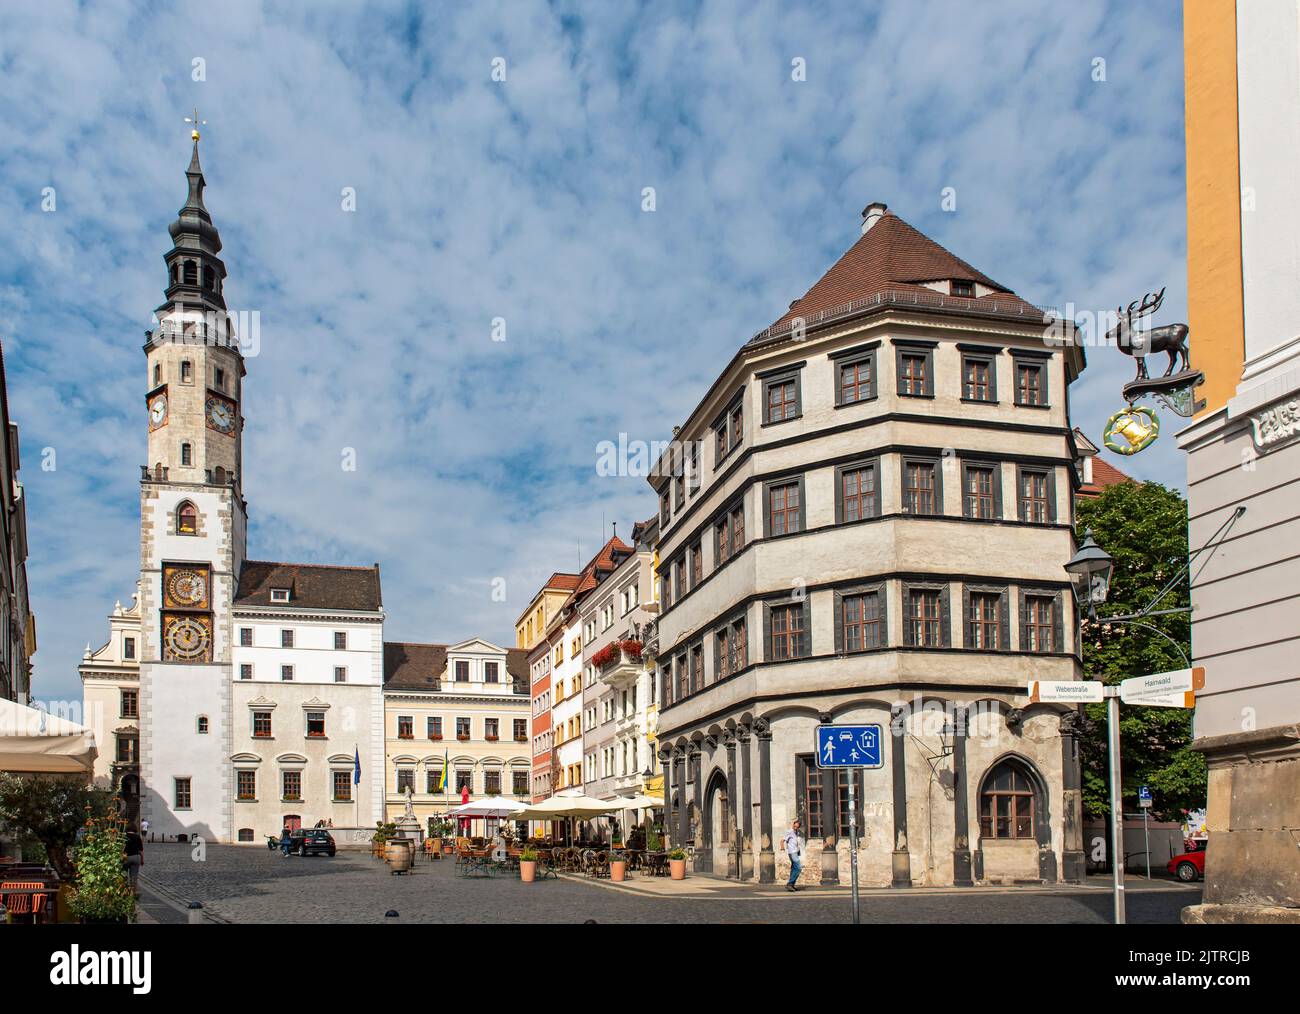 Ancien hôtel de ville Tour de l'horloge et place du bas marché (Untermarkt), Görlitz (Goerlitz), Allemagne Banque D'Images